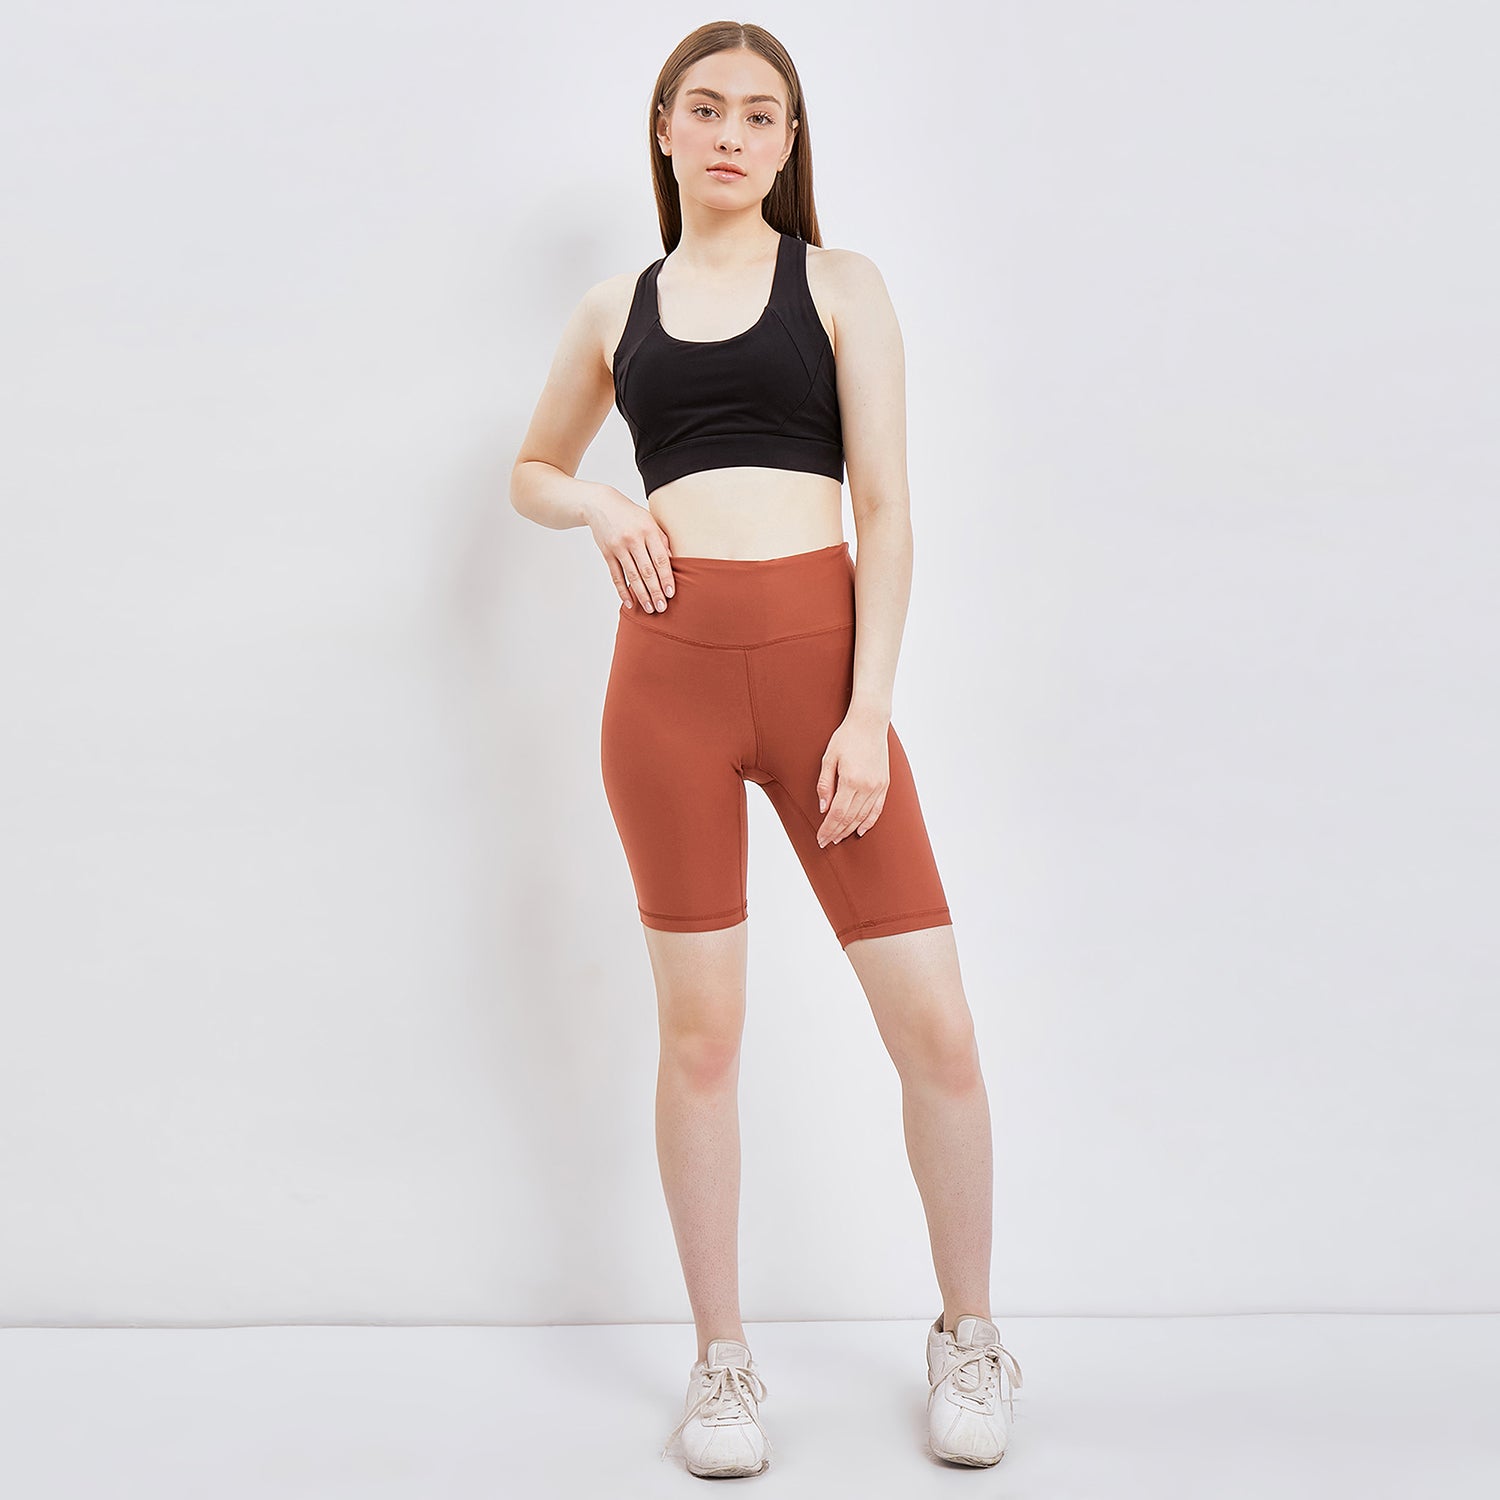 Thalia Biker Short - Celana Pendek Olahraga Wanita Big Size [MYRMS 01]